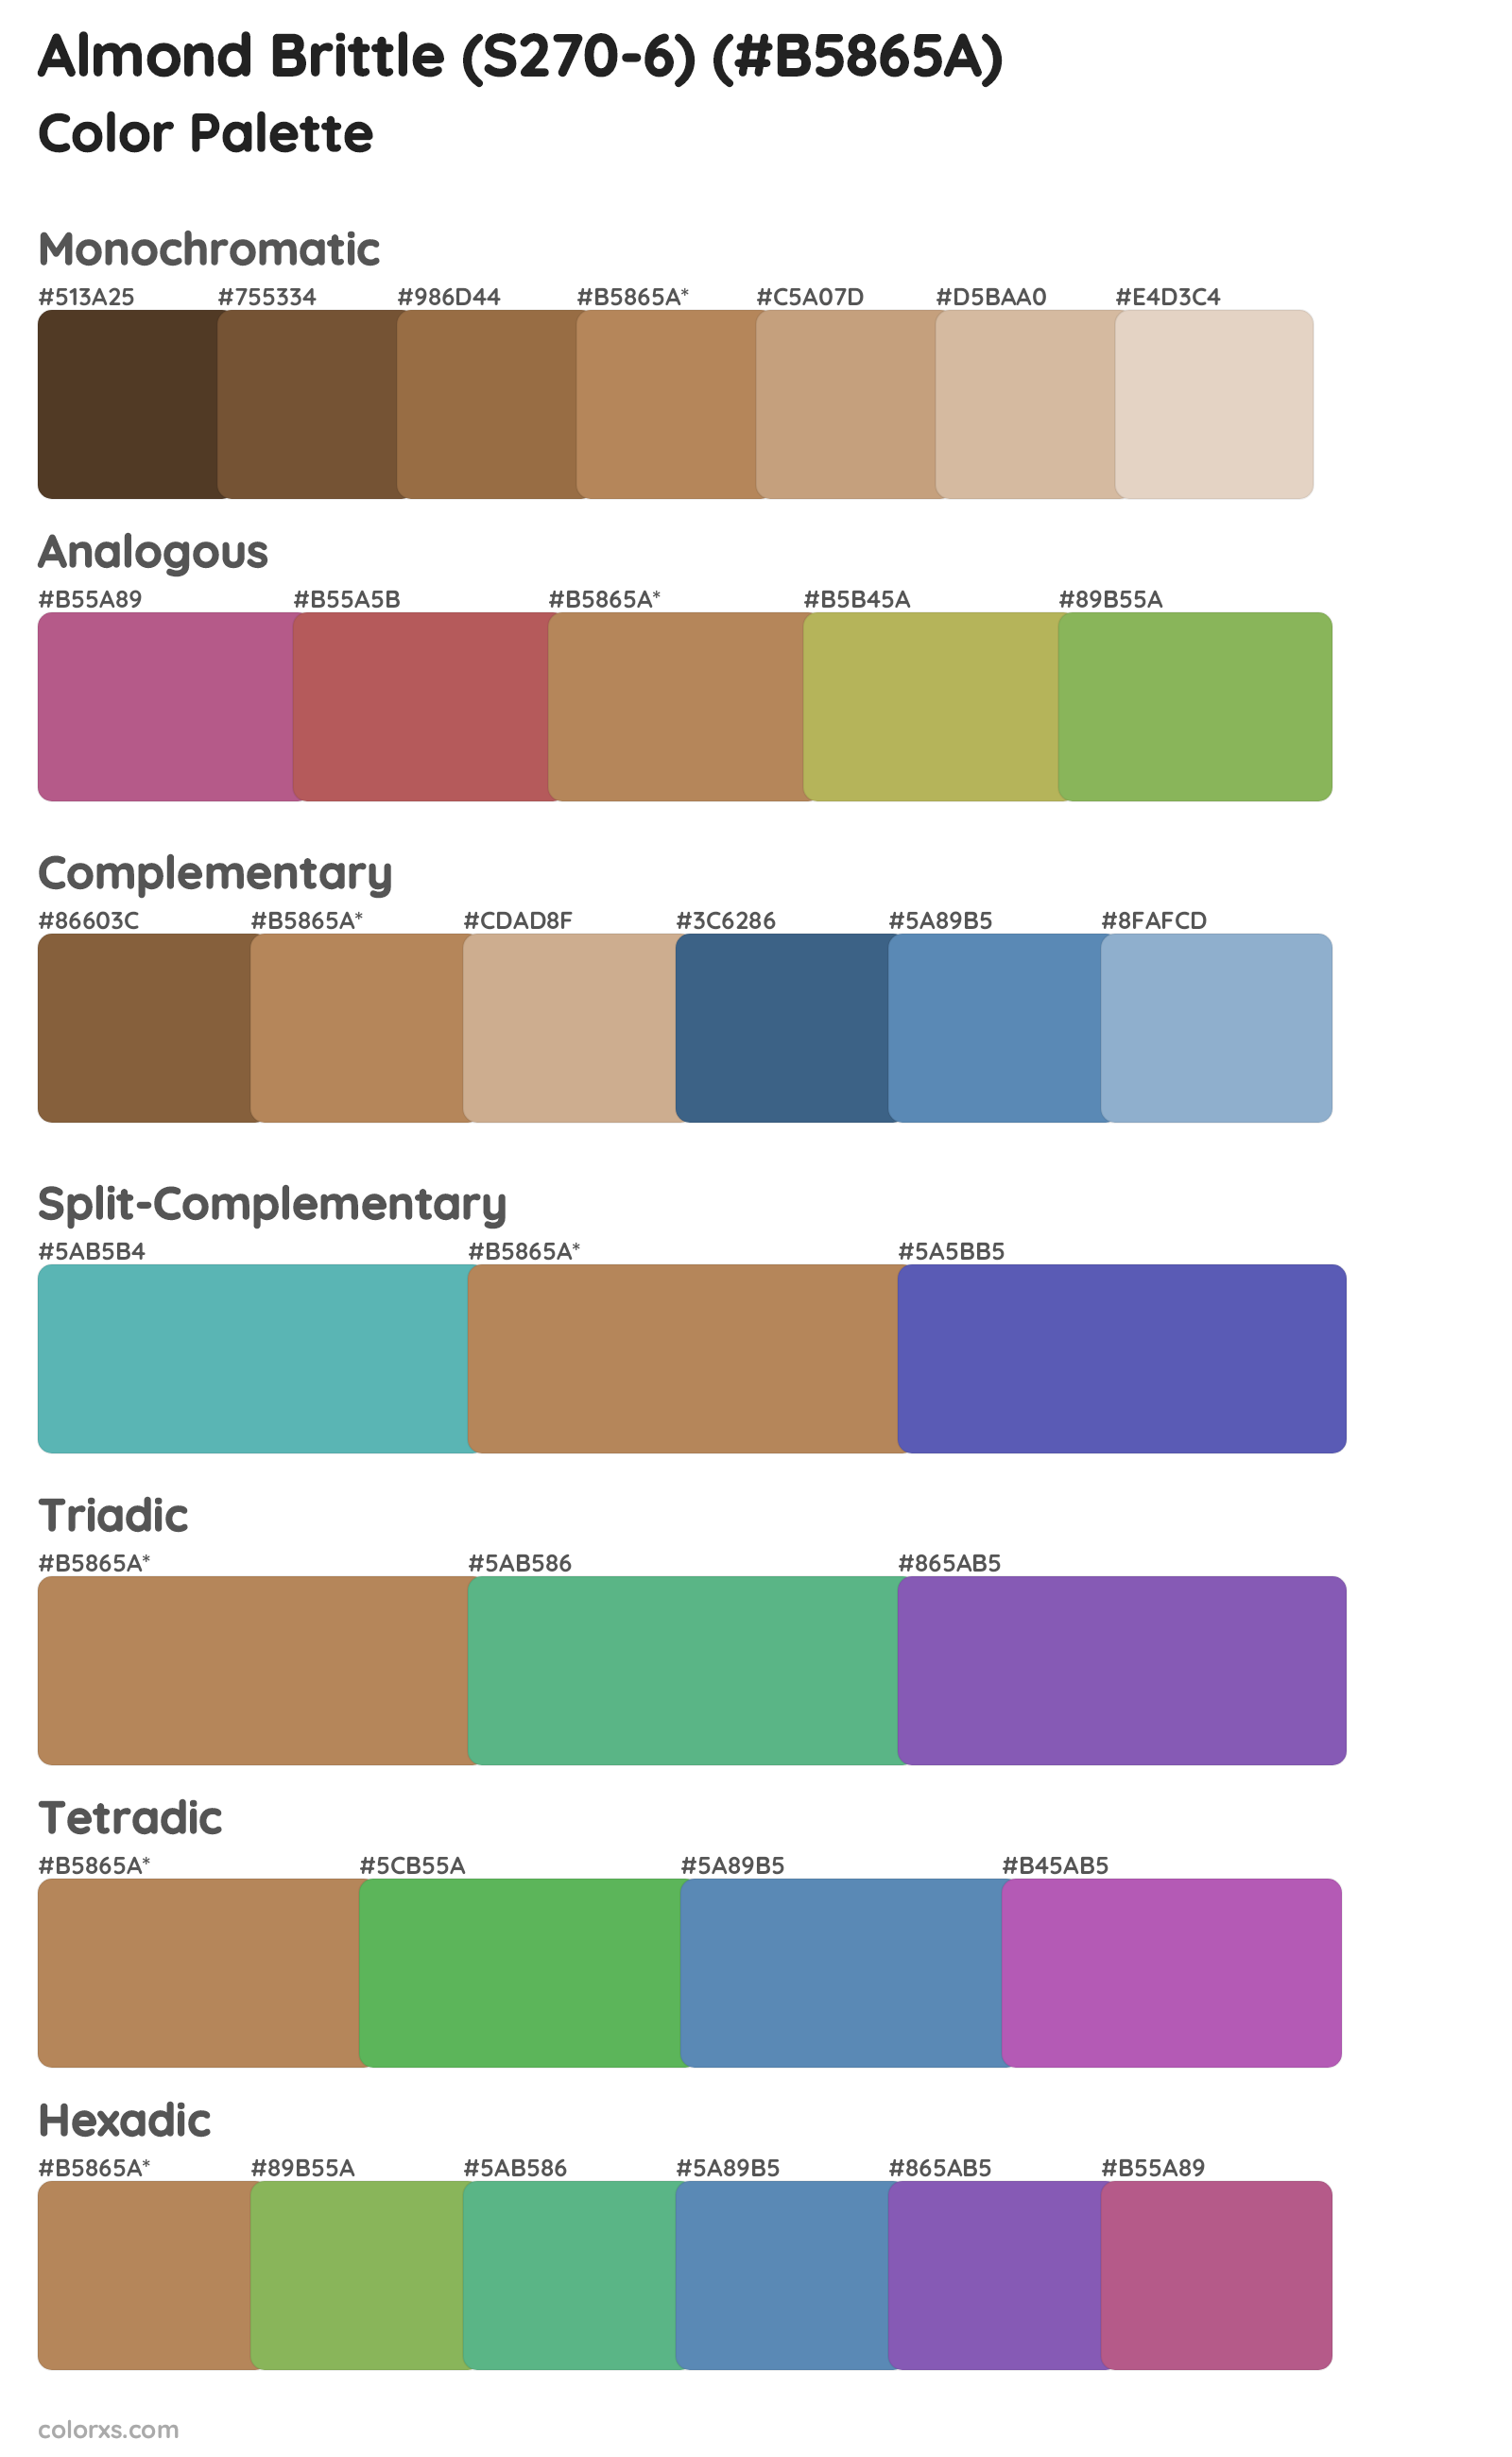 Almond Brittle (S270-6) Color Scheme Palettes